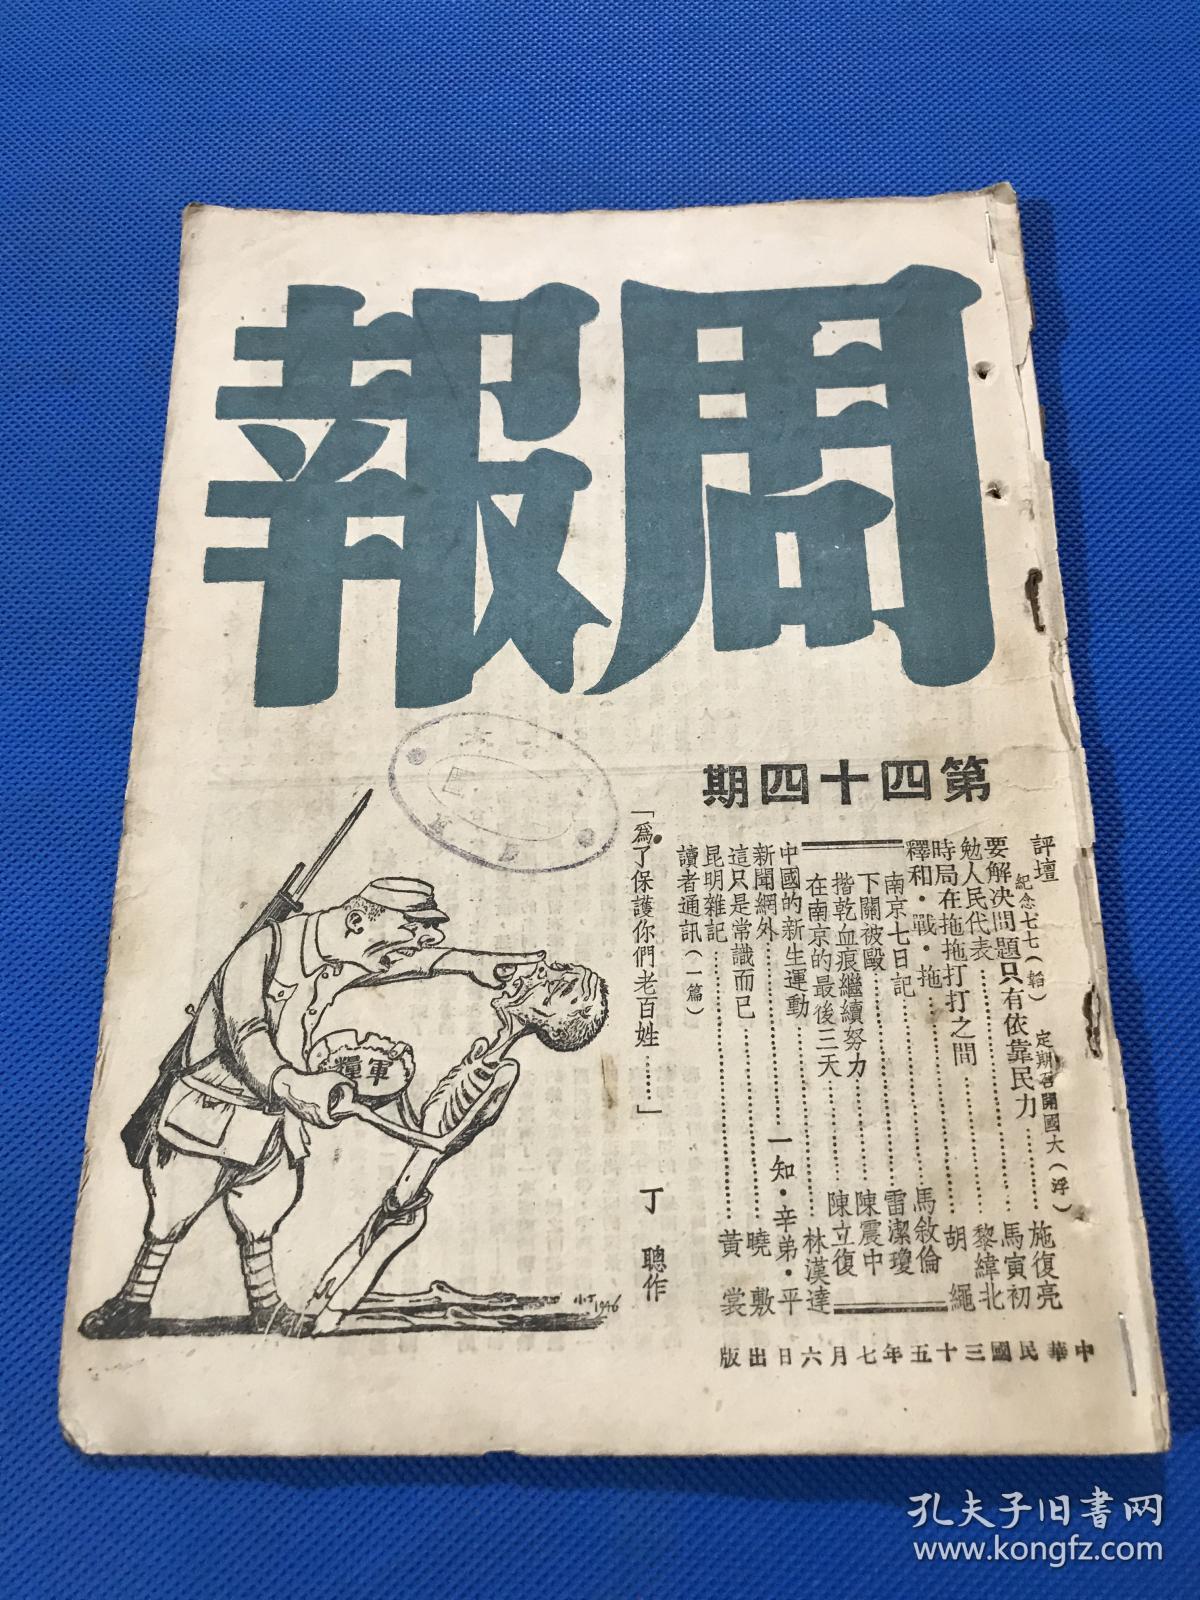 民国35年 《周报》第44期 主要内容有 时局在推拖打打之间  昆明杂记 中国的新生运动 南京七日记  在南京的最后三天 封面为丁聪漫画